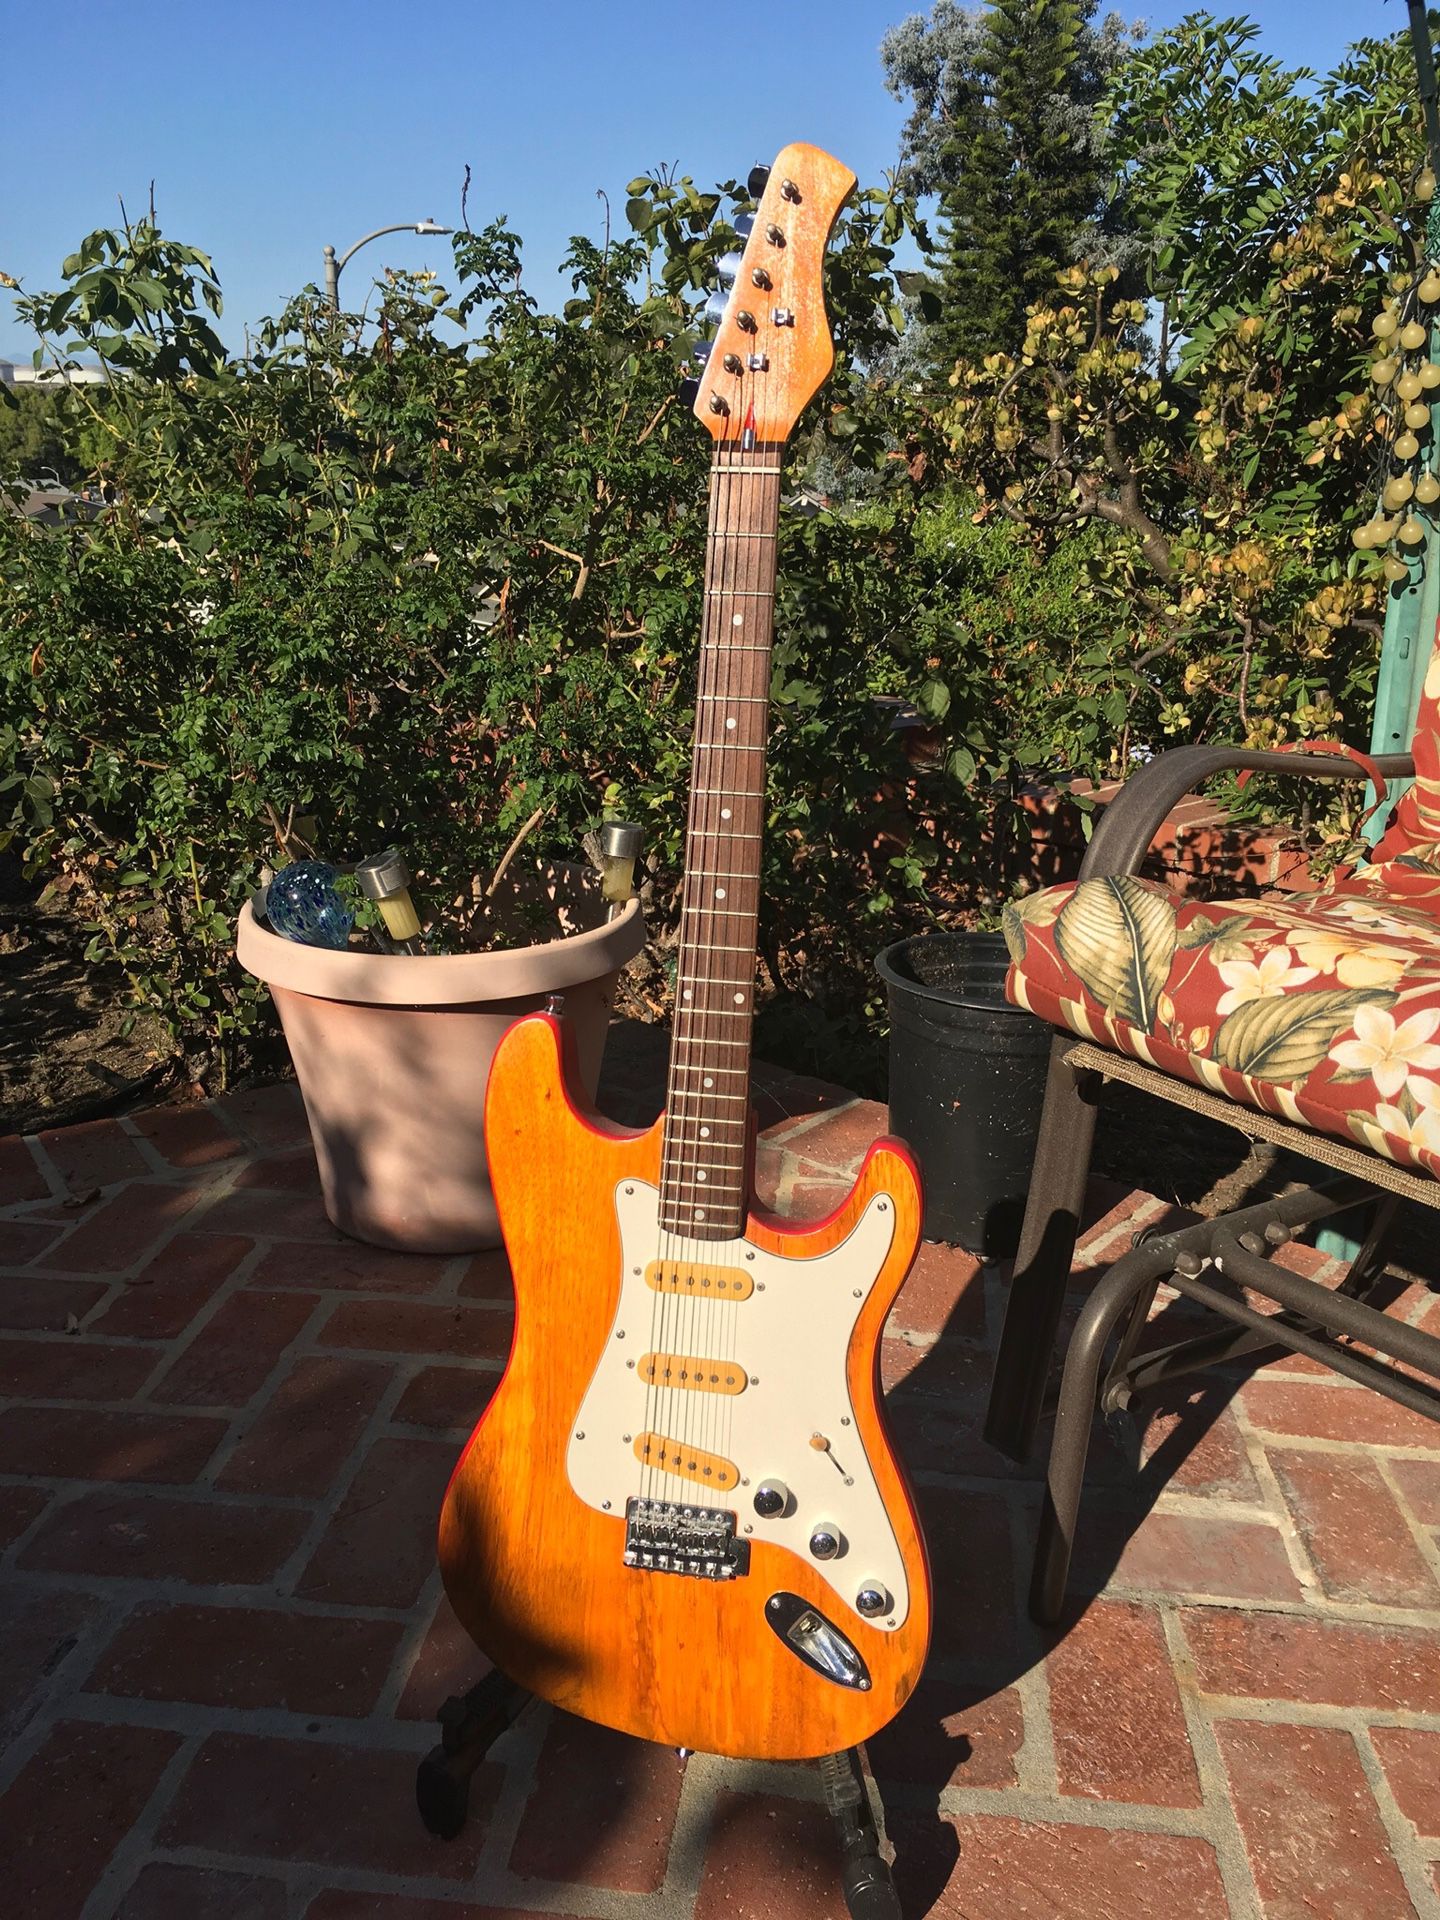 1970/80s Hondo electric guitar